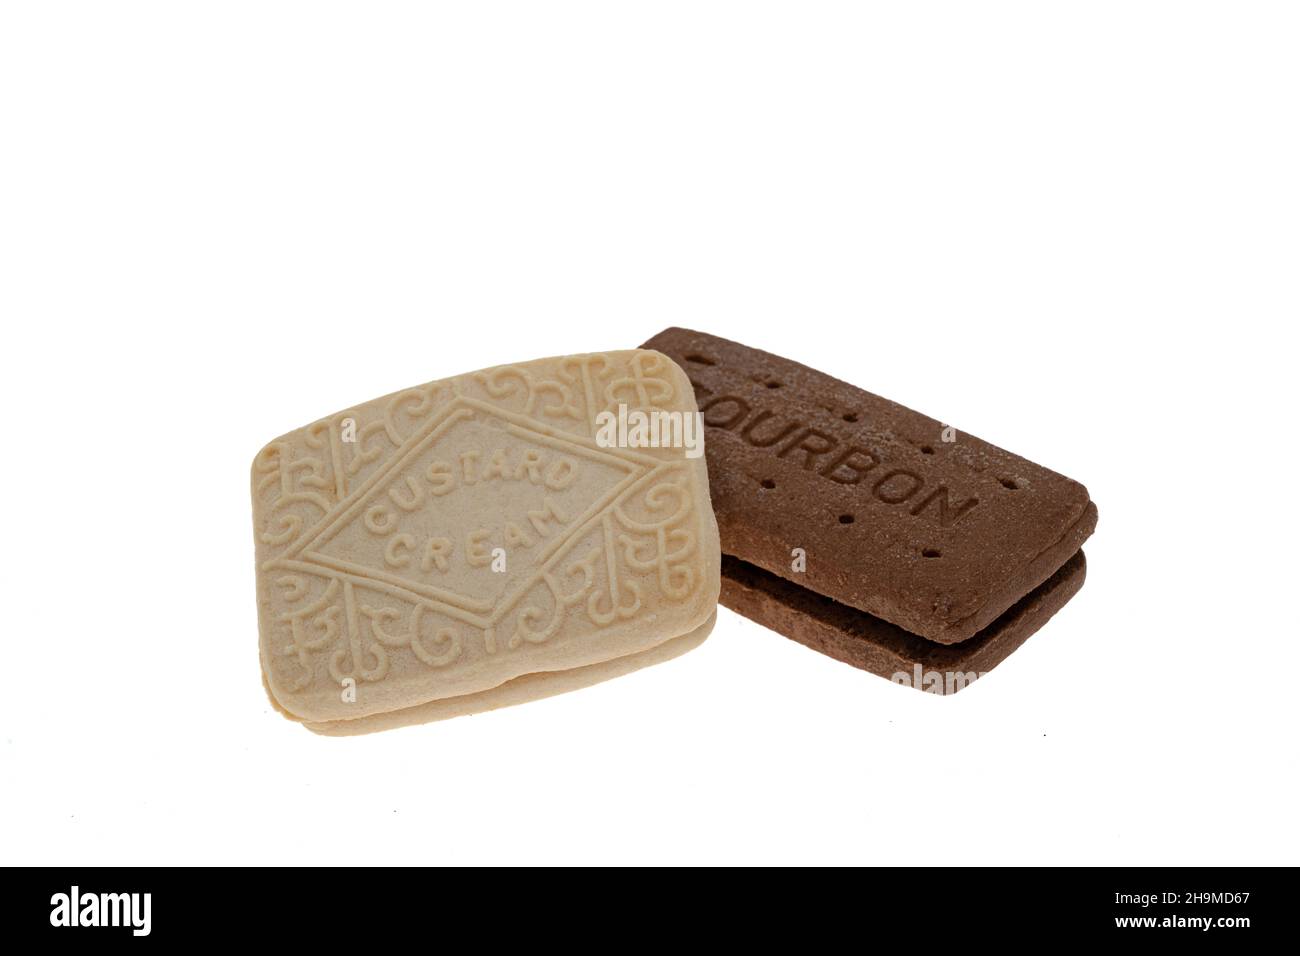 Una crema de natillas y una galleta de chocolate bourbon - fondo blanco Foto de stock